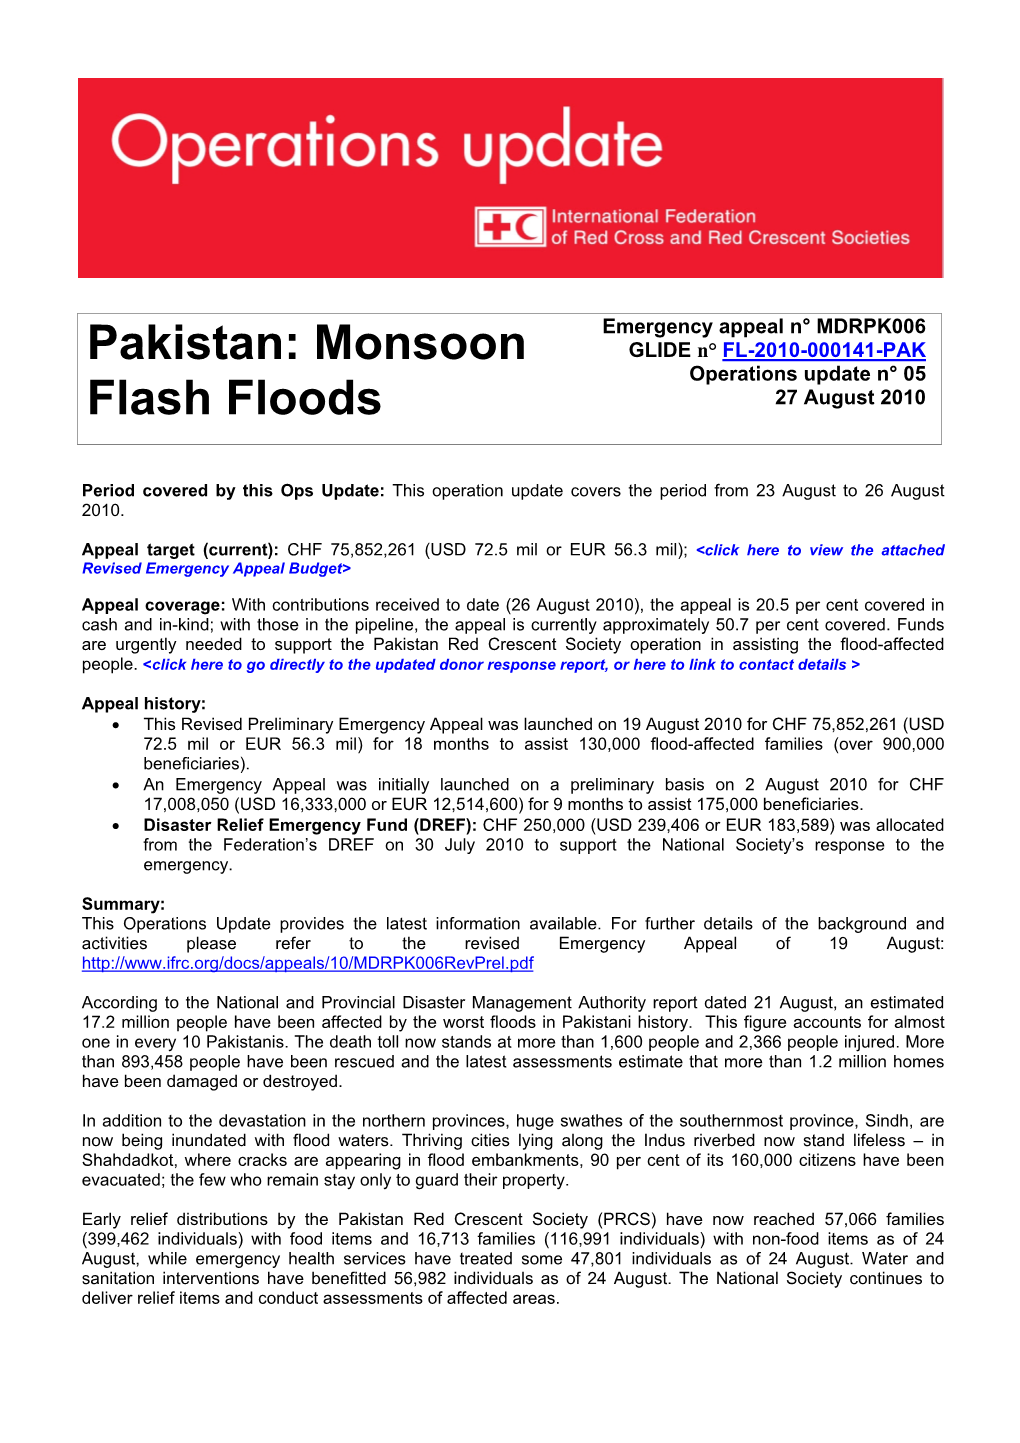 Pakistan: Monsoon Flash Floods